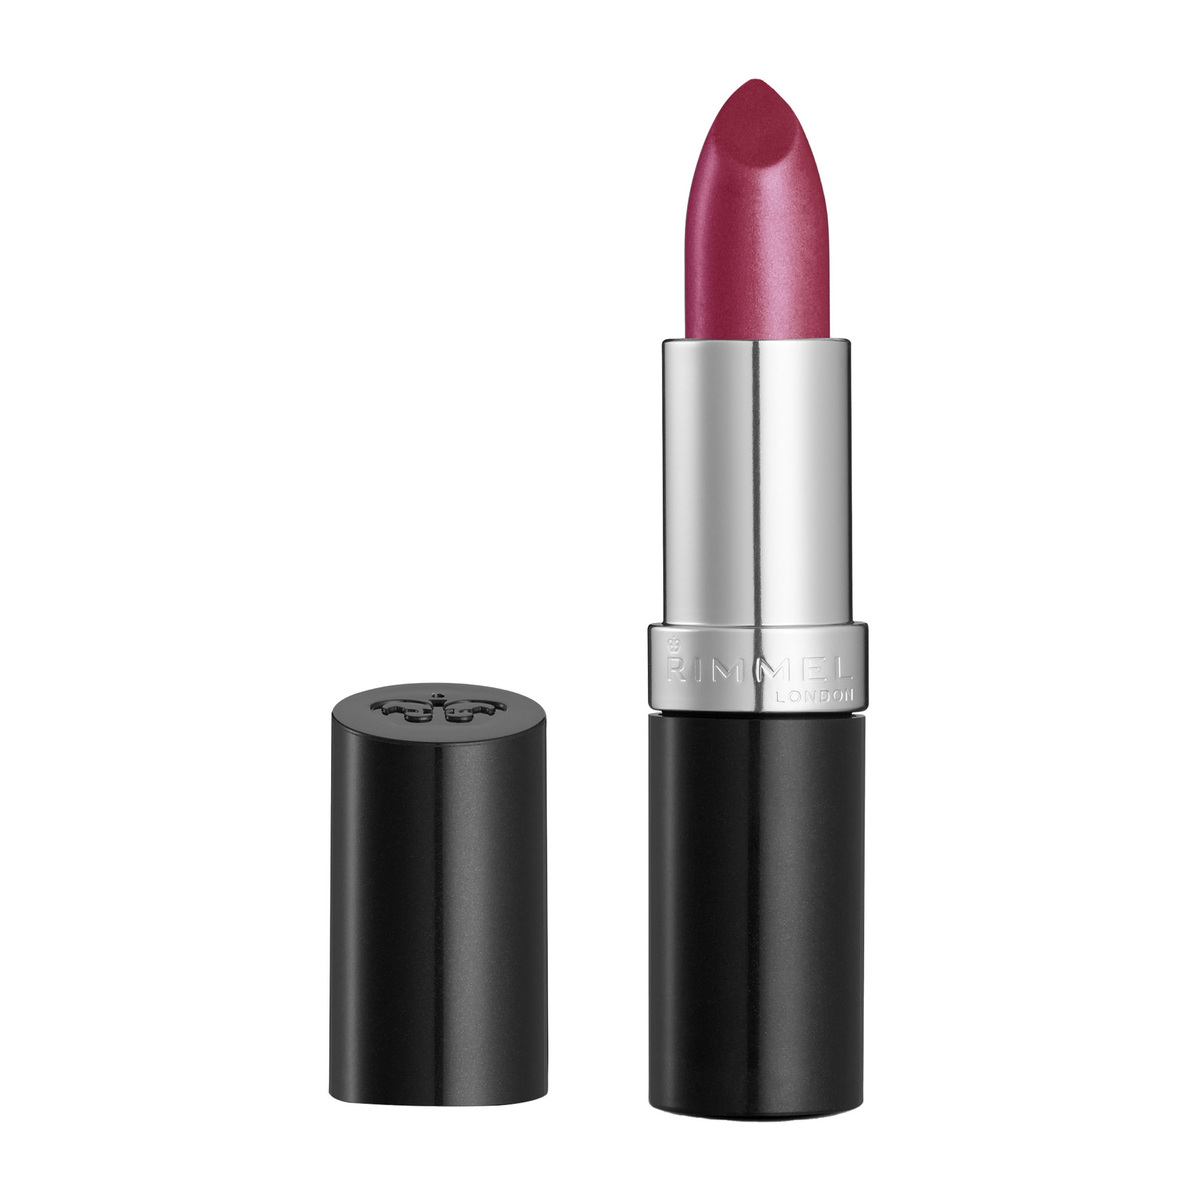  Rimmel Lasting Finish Lipstick Pink Blush : Blush Women  Lipstick : Beauty & Personal Care